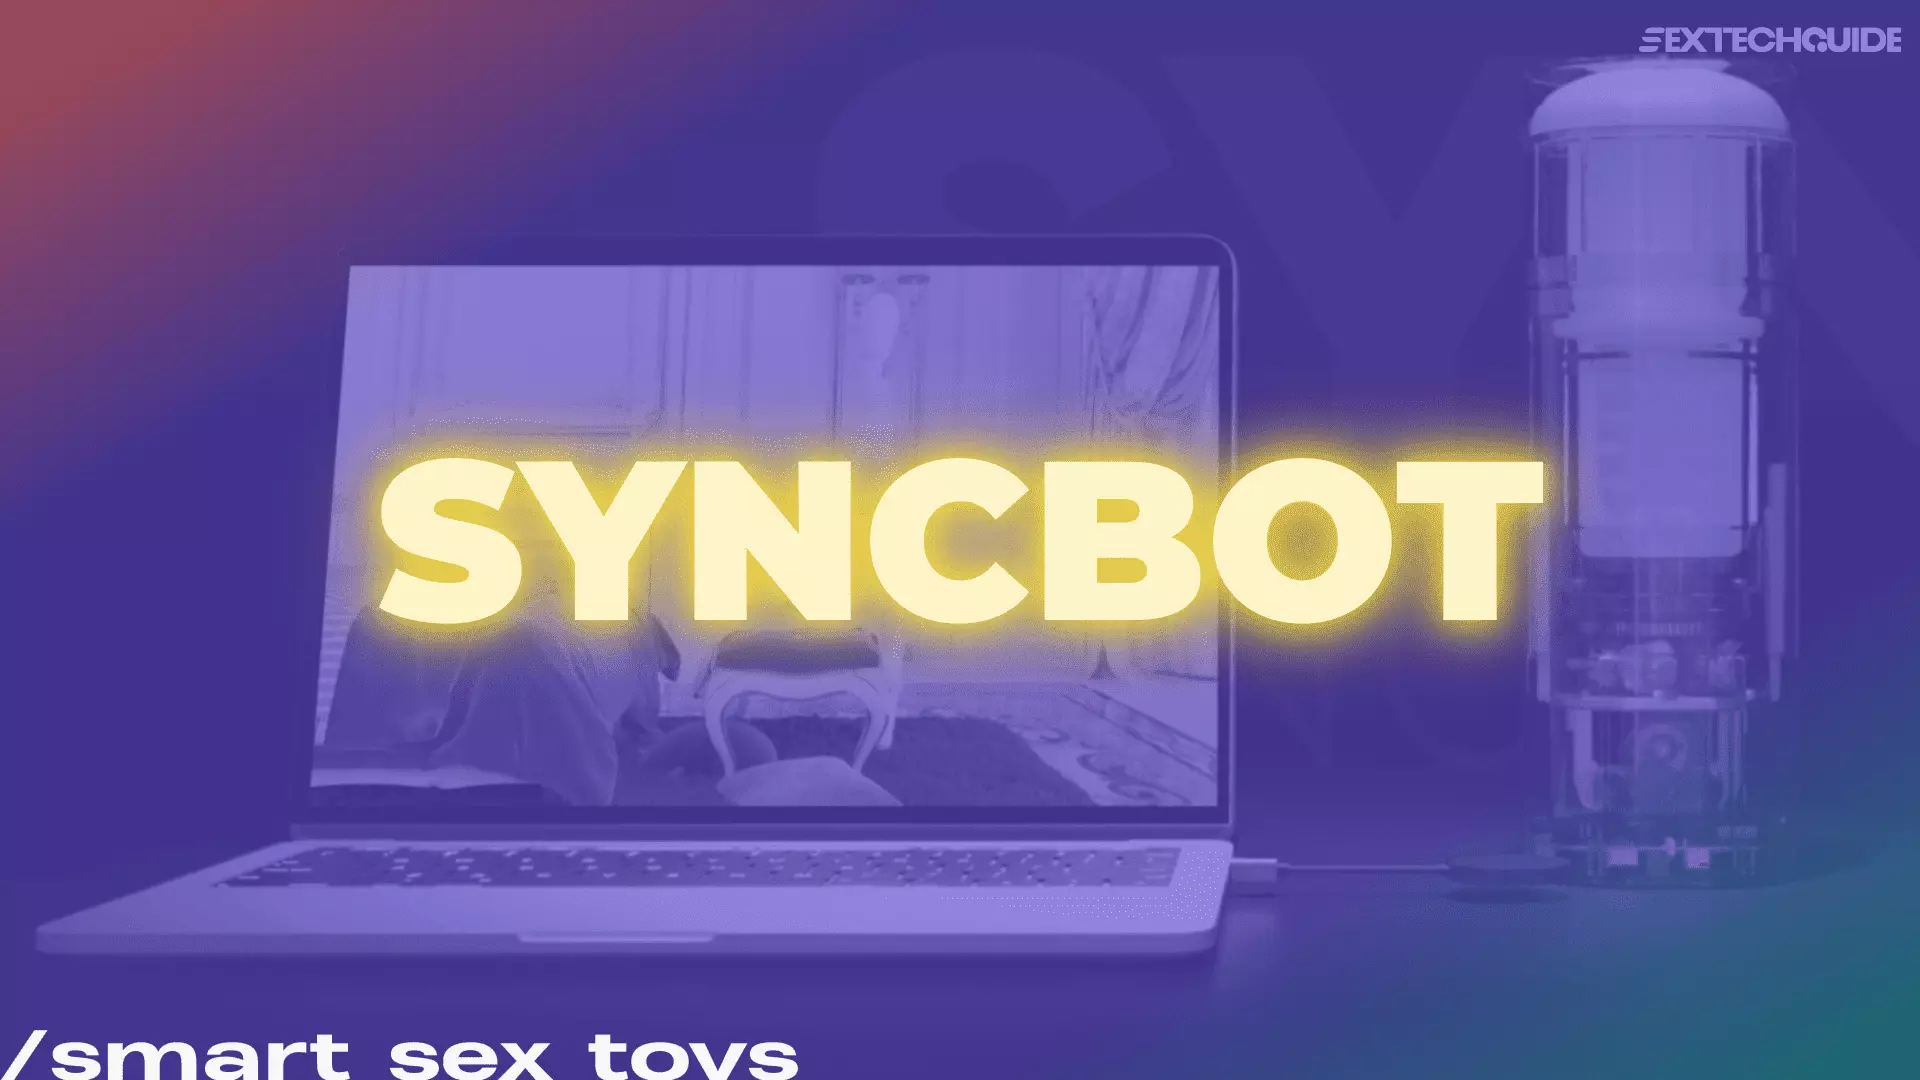 Syncbot toy